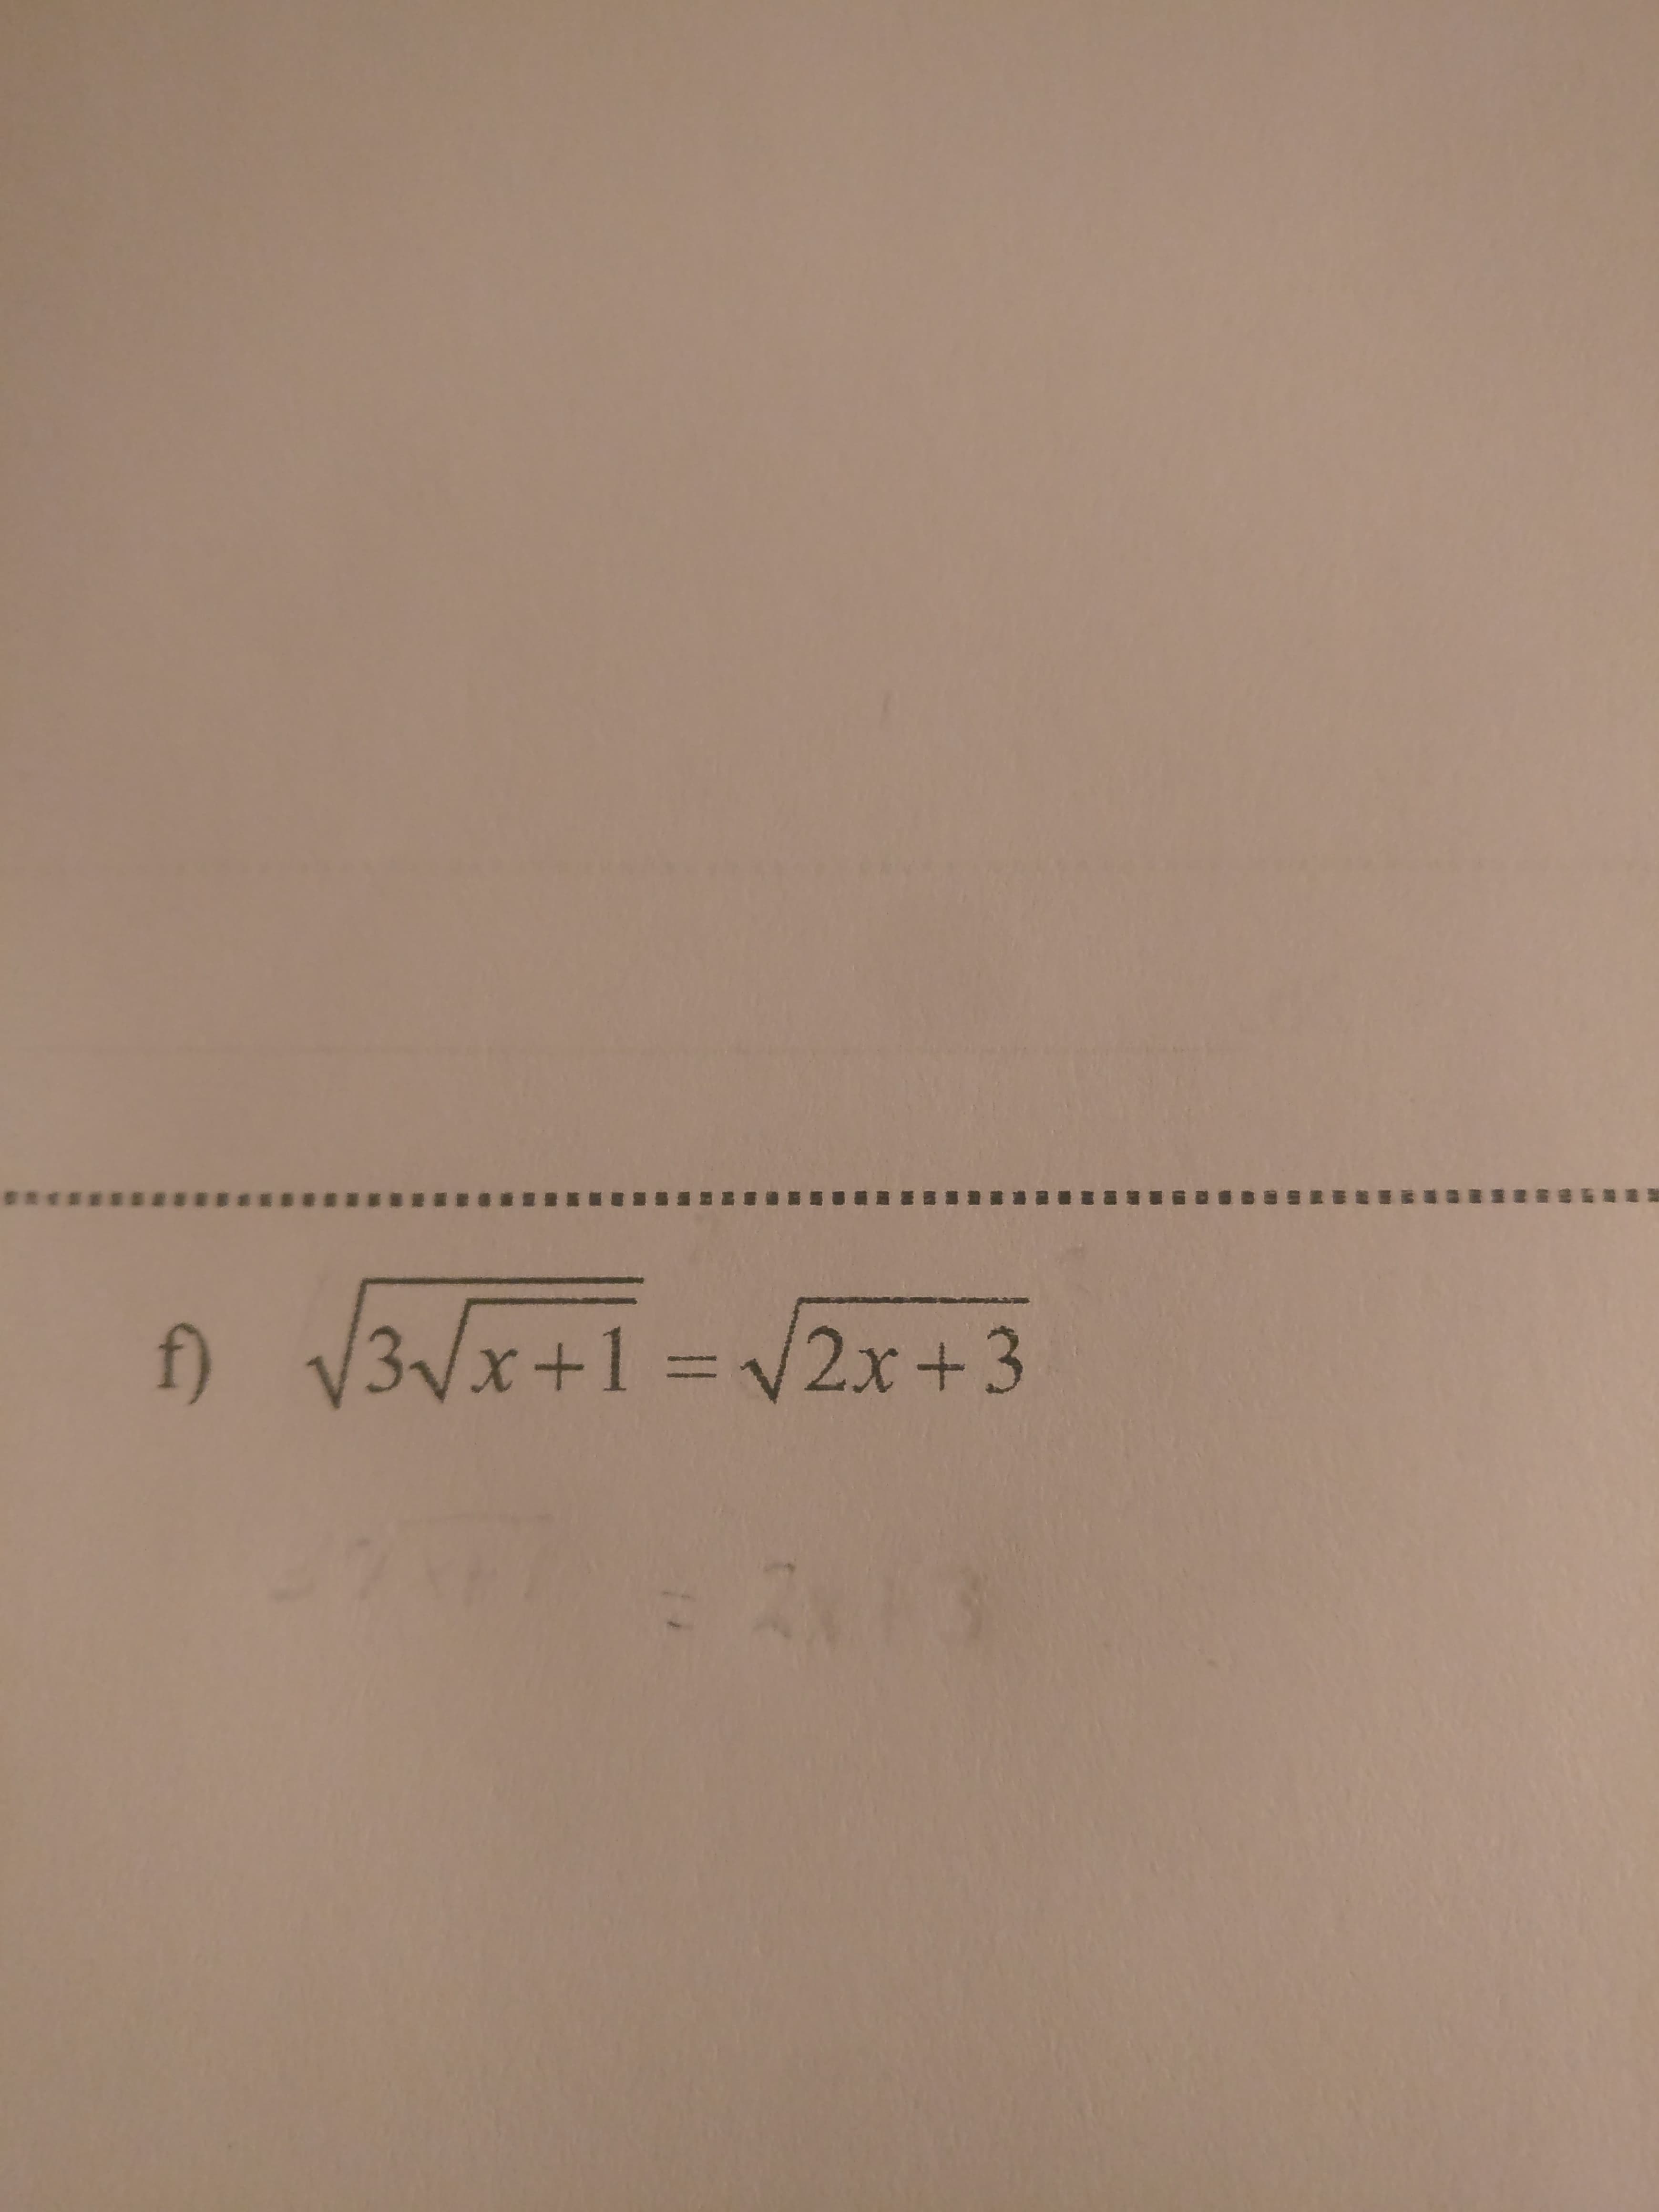 f)
/3Vx+1=
2x+3
